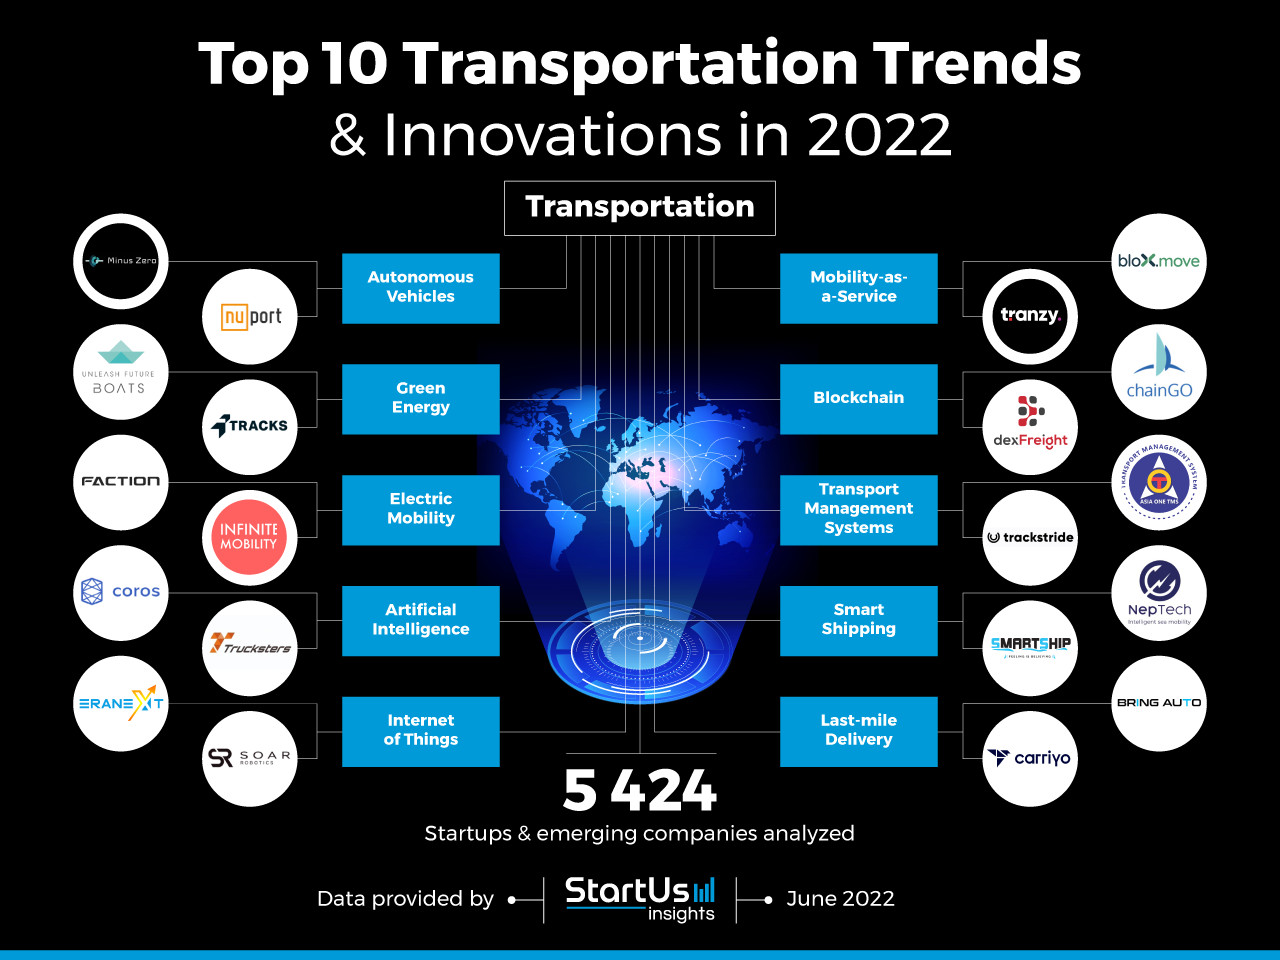 Top 10 Transportation Trends & Innovations in 2022